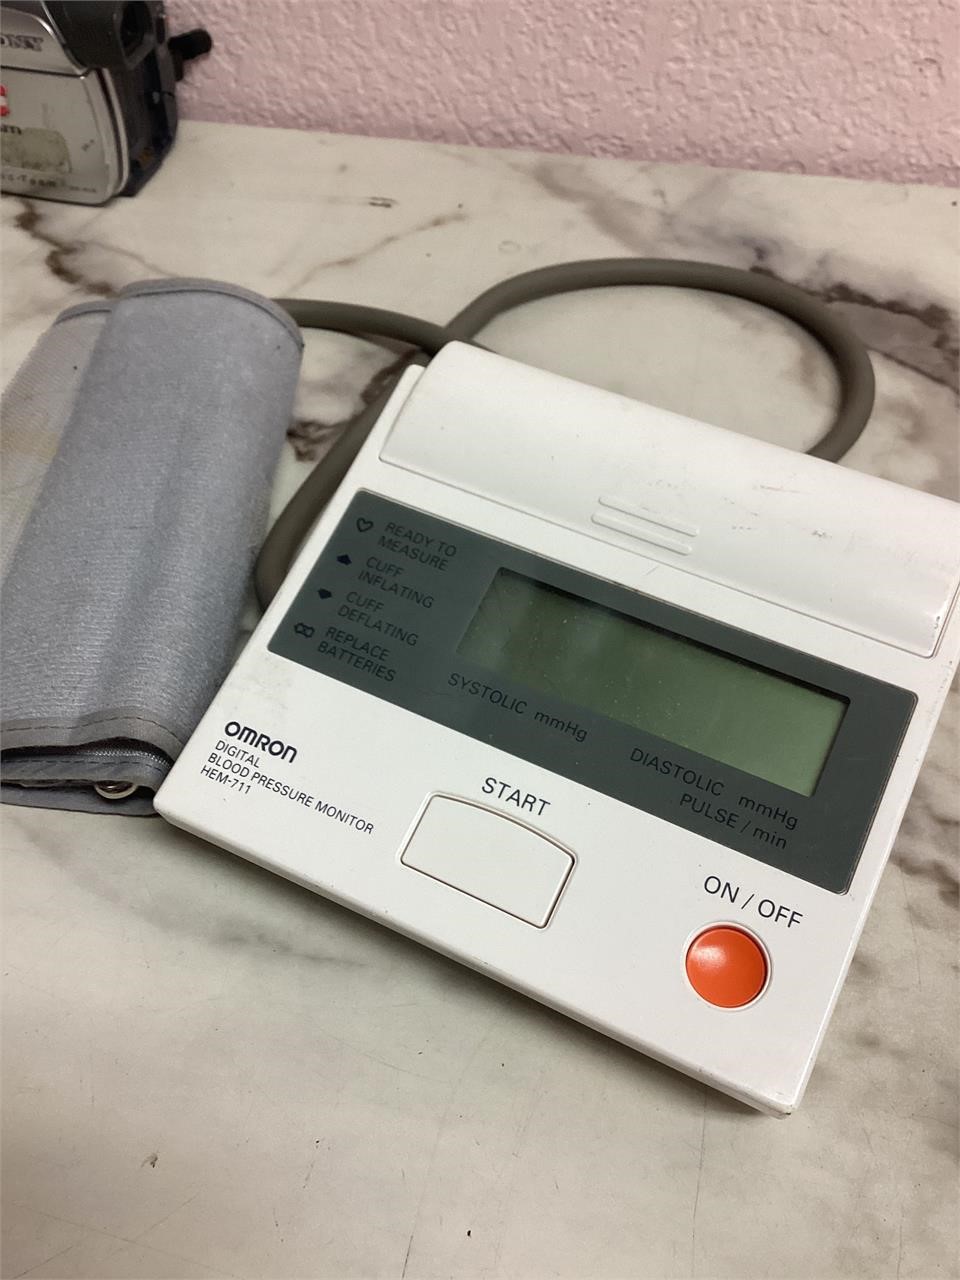 Digital blood pressure cuff